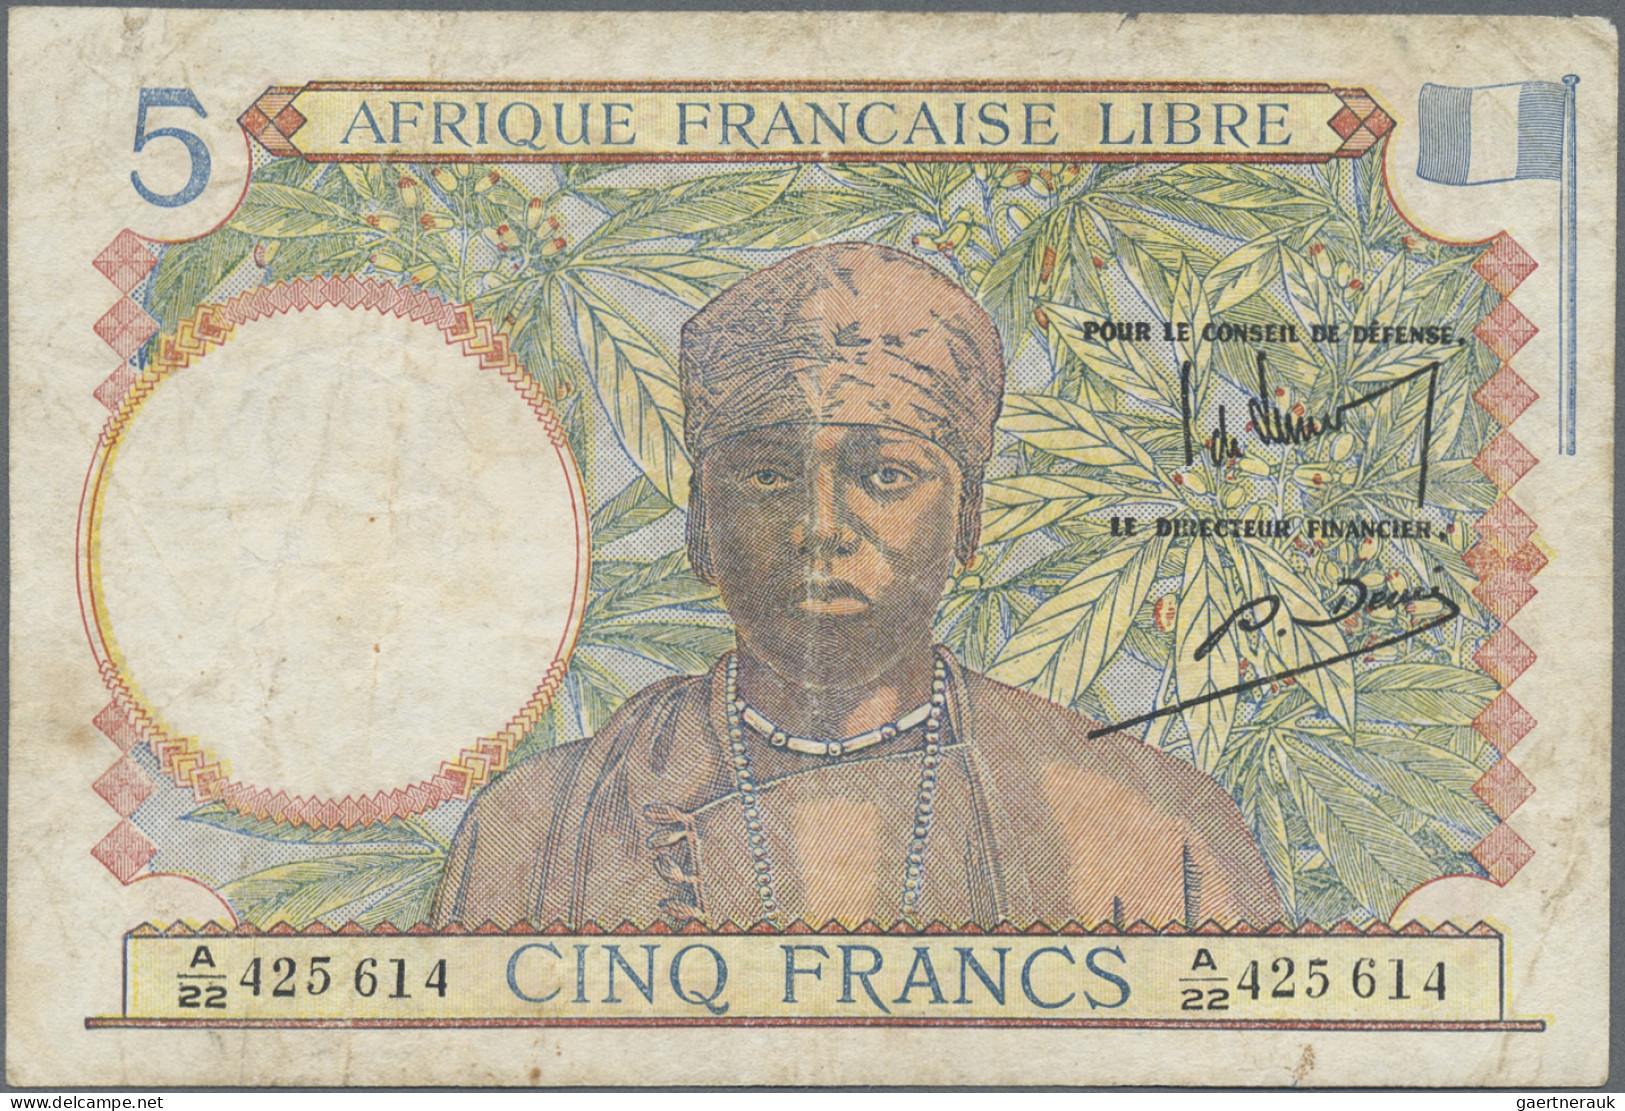 French Equatorial Africa: Afrique Française Libre, Caisse Centrale De La France - Aequatorial-Guinea